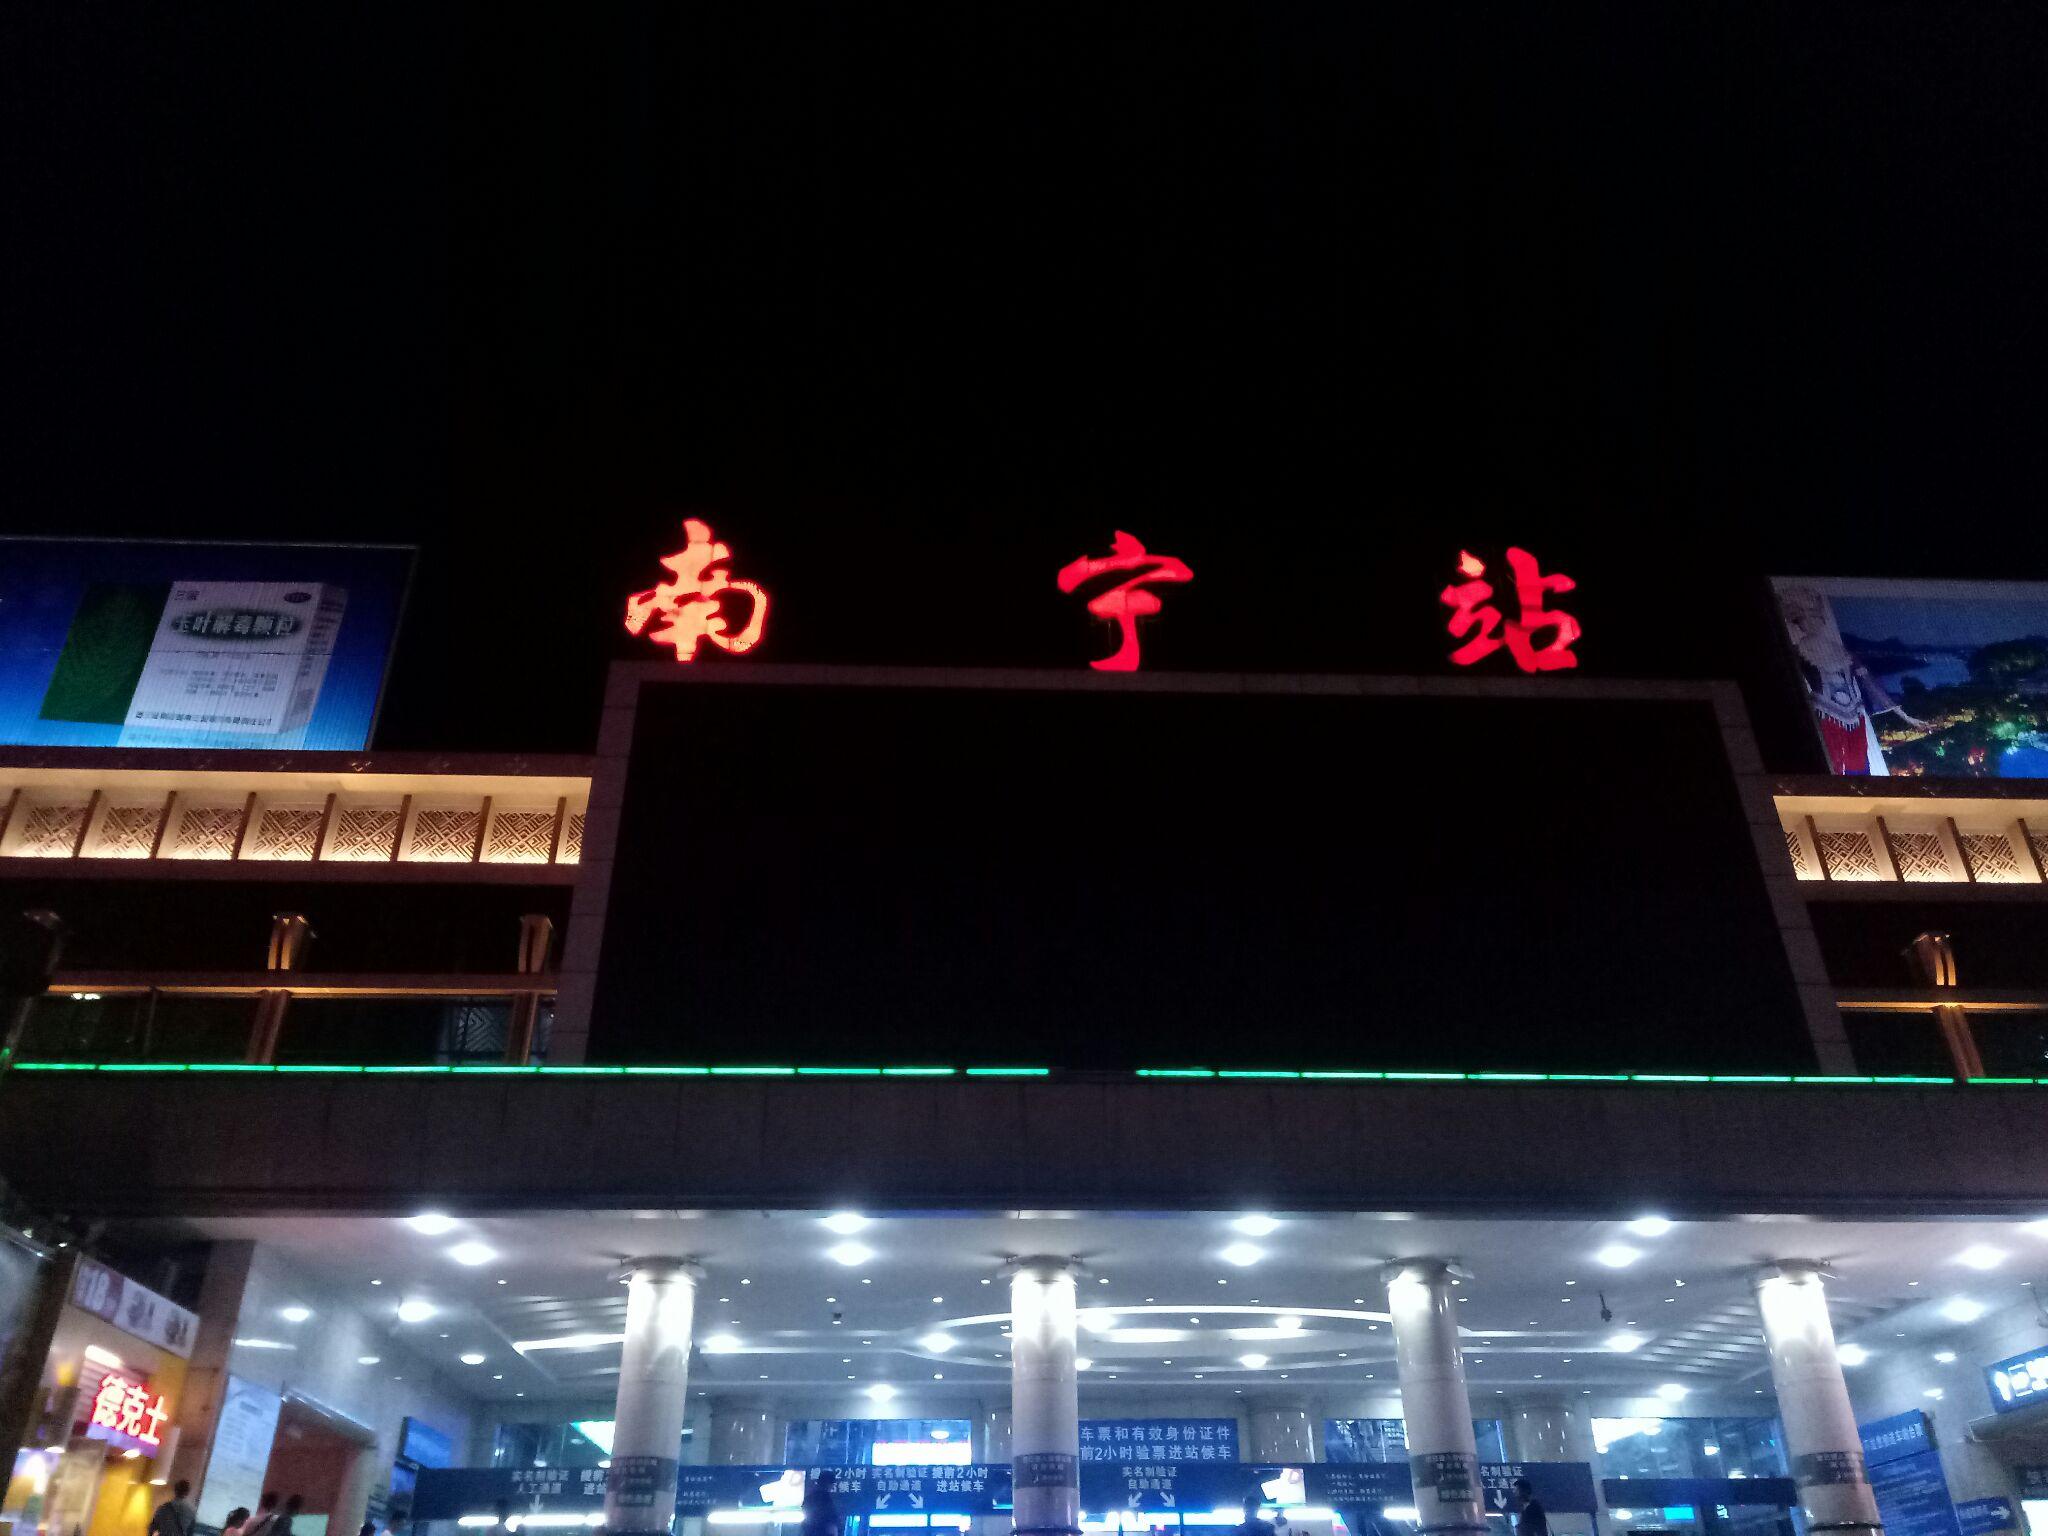 南宁火车站还是相当热闹的,坐在火车站的阶梯上,吹着夜晚的冷风,与大